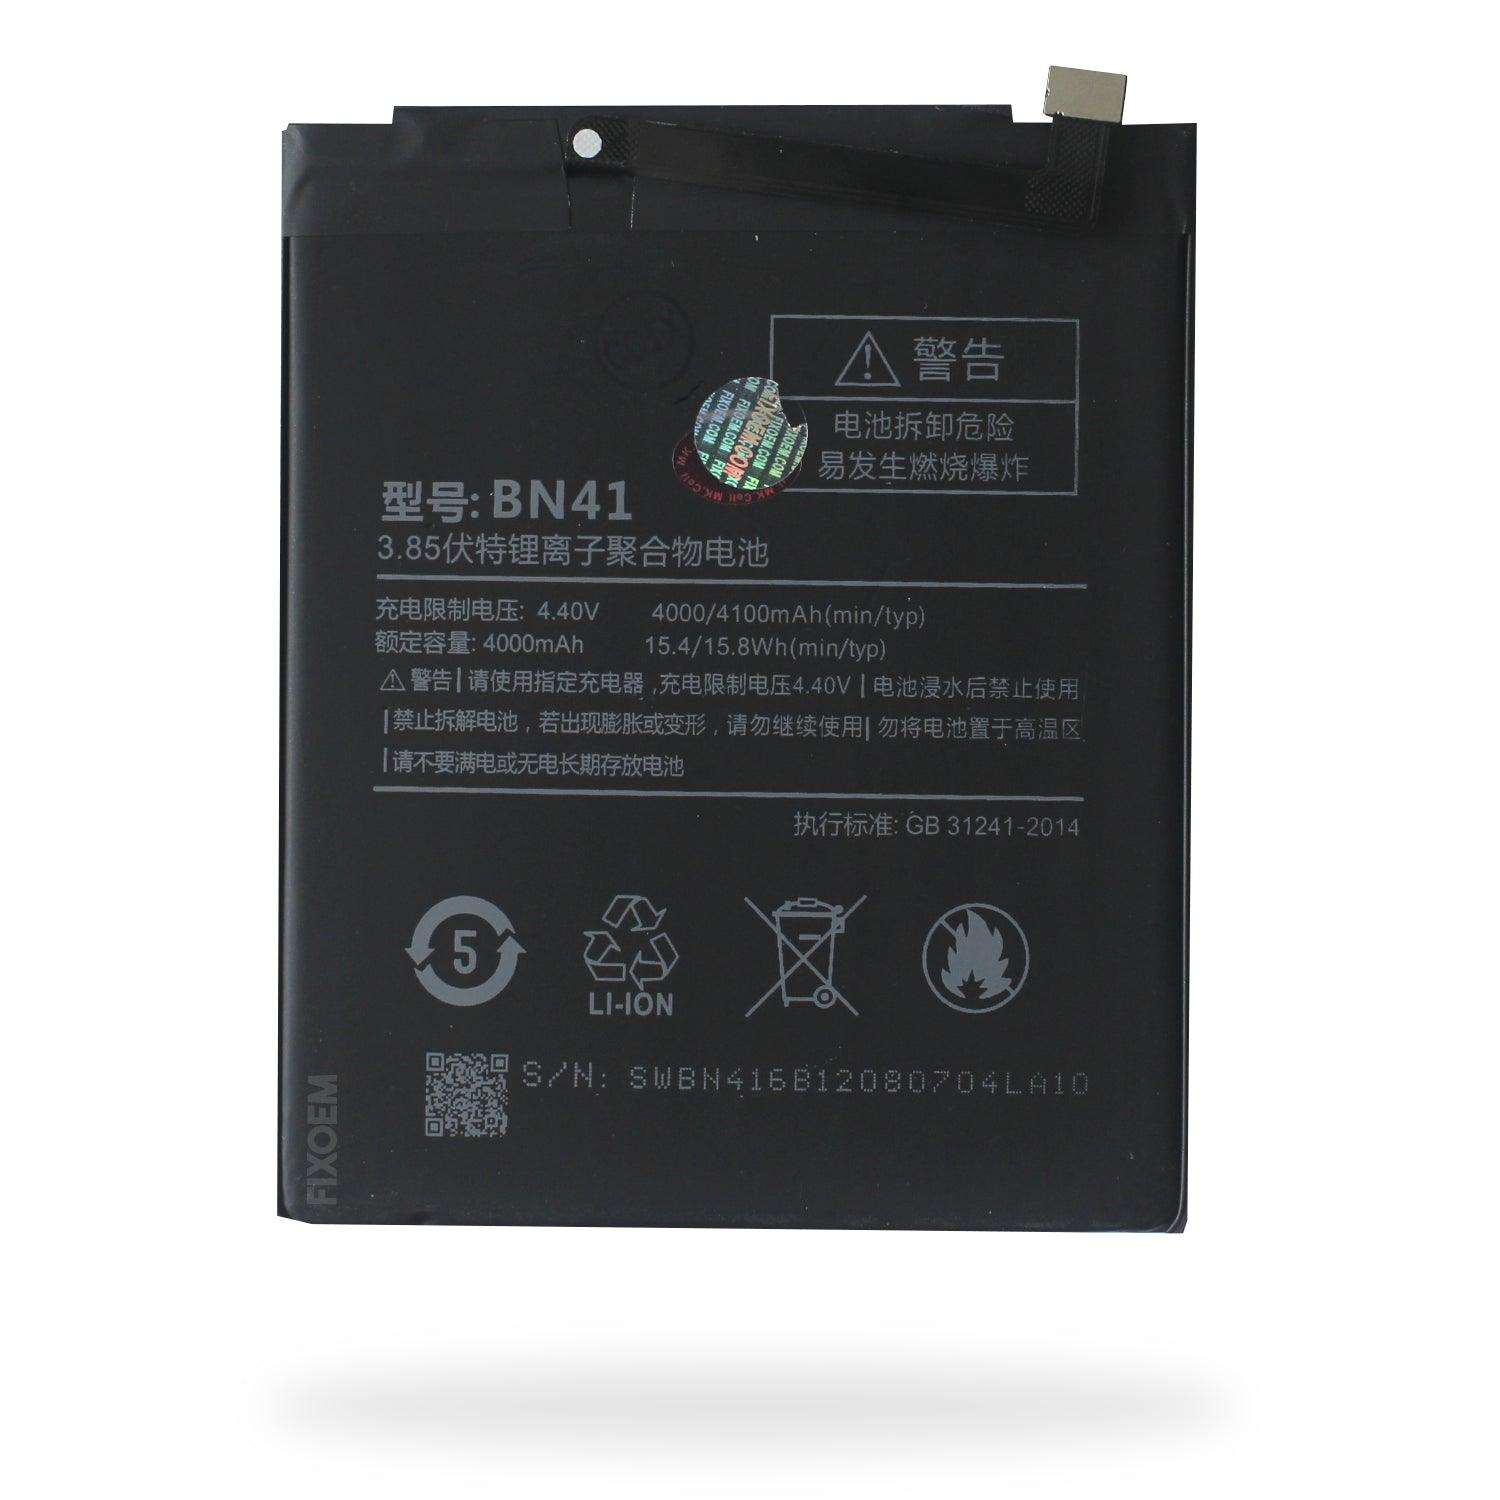 Bateria Xiaomi Note 4 Pro Bn41 a solo $ 160.00 Refaccion y puestos celulares, refurbish y microelectronica.- FixOEM